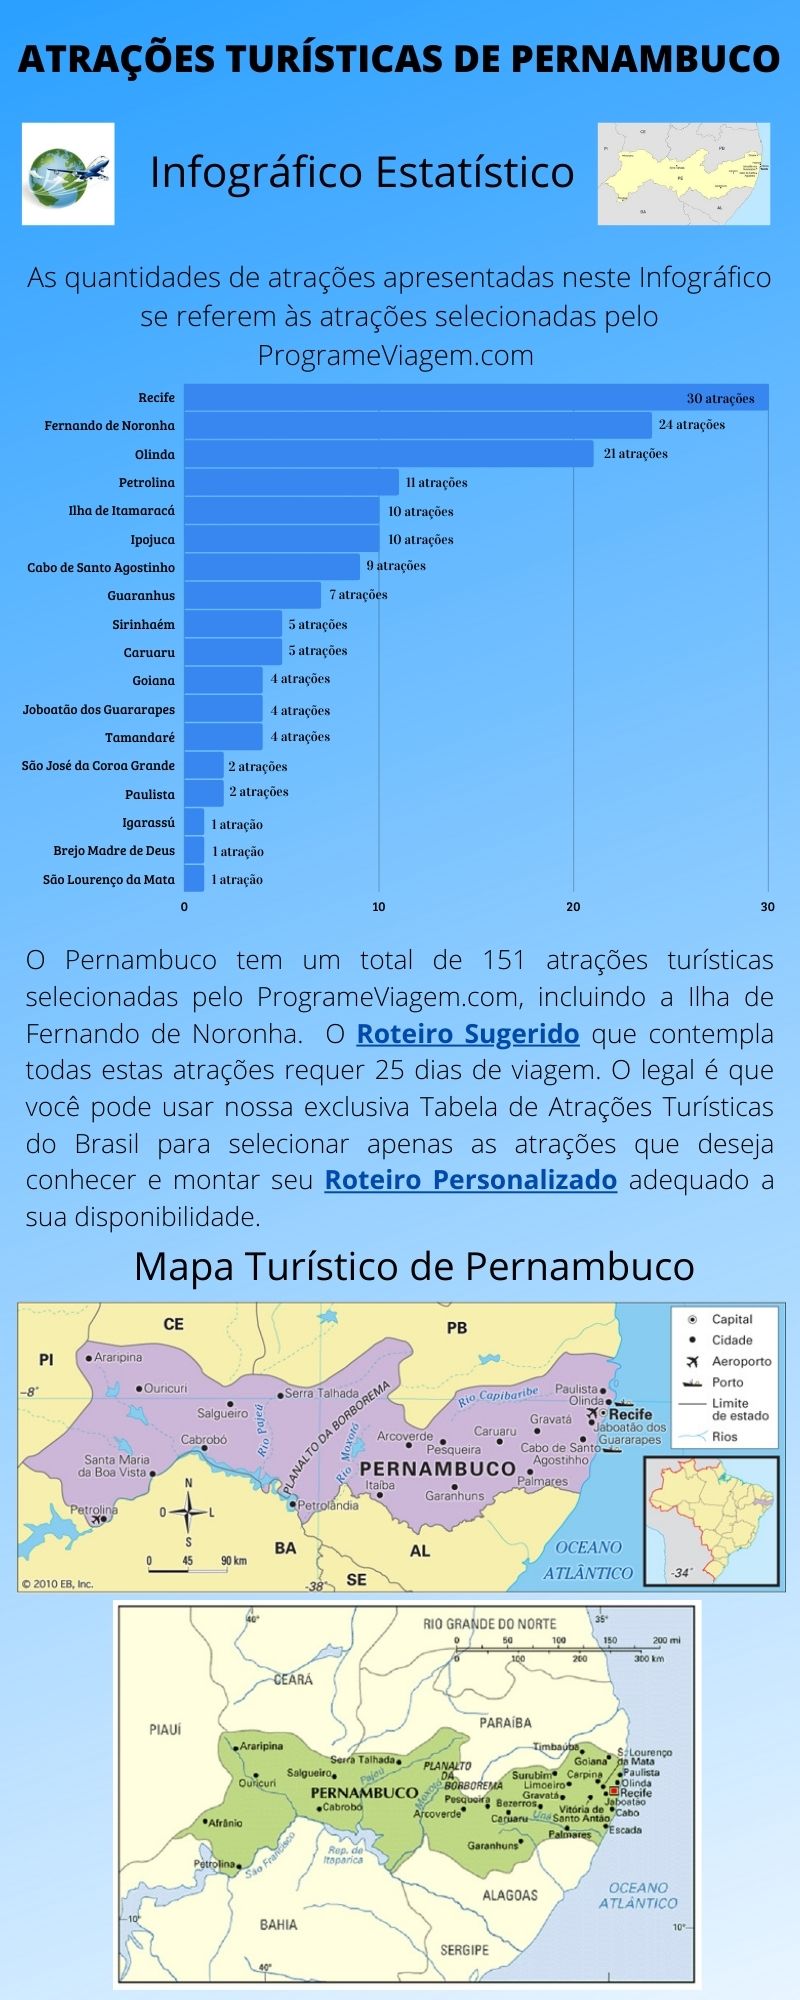 Infográfico Atrações Turísticas de Pernambuco